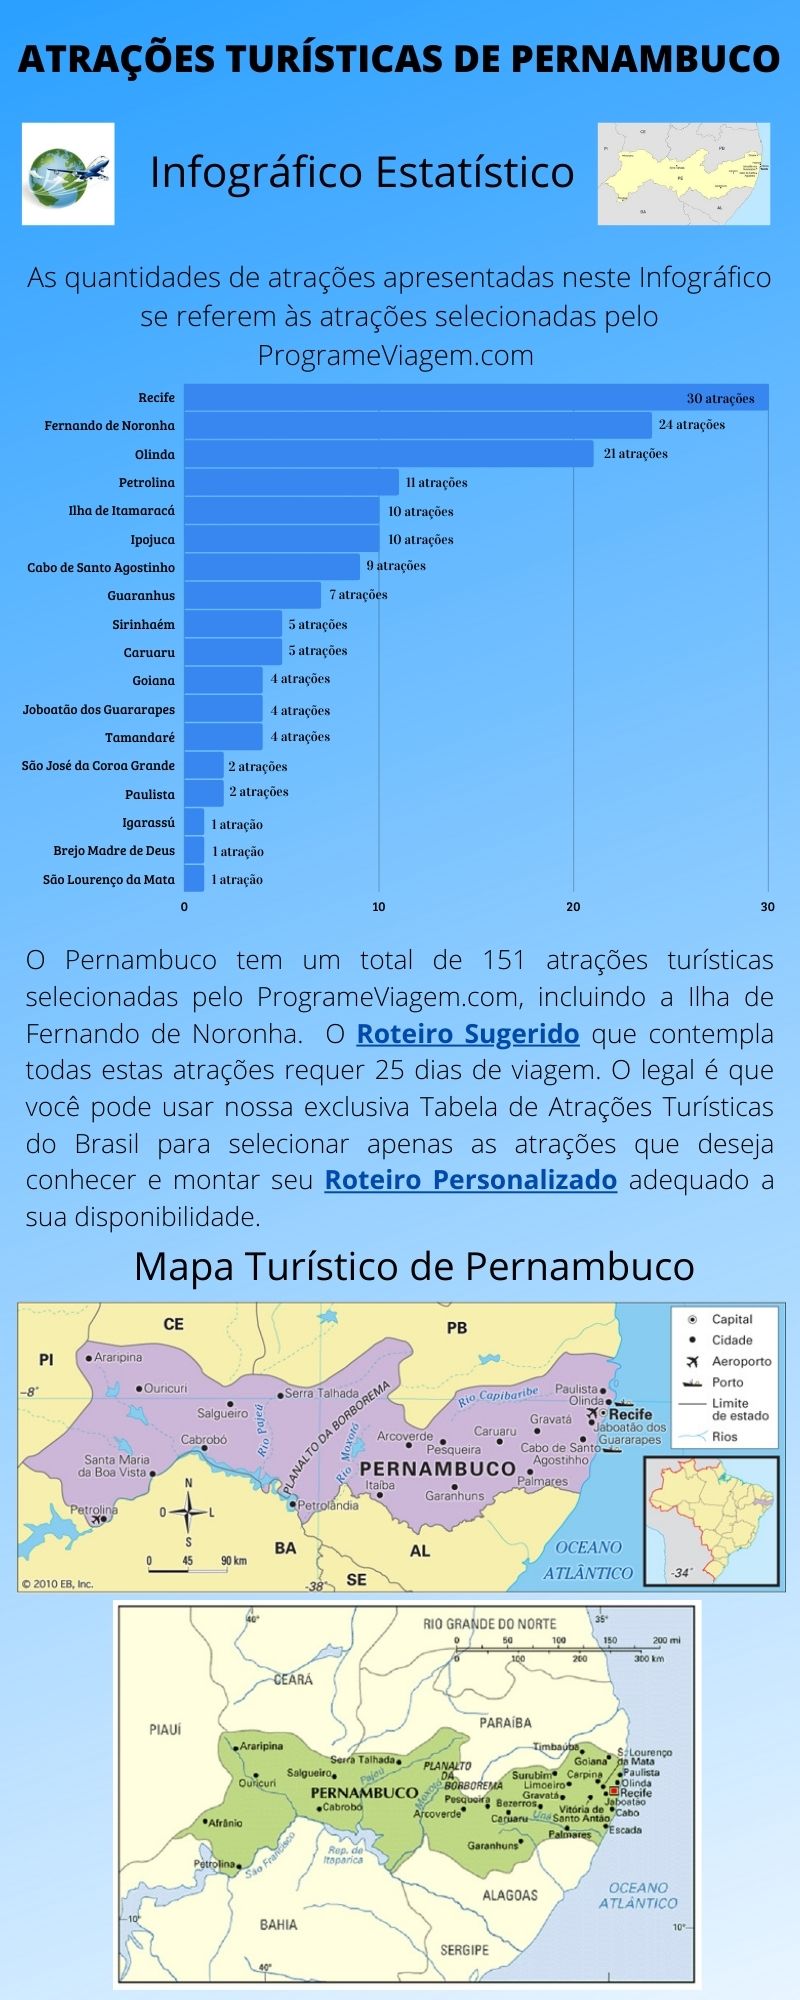 Infográfico Atrações Turísticas de Pernambuco